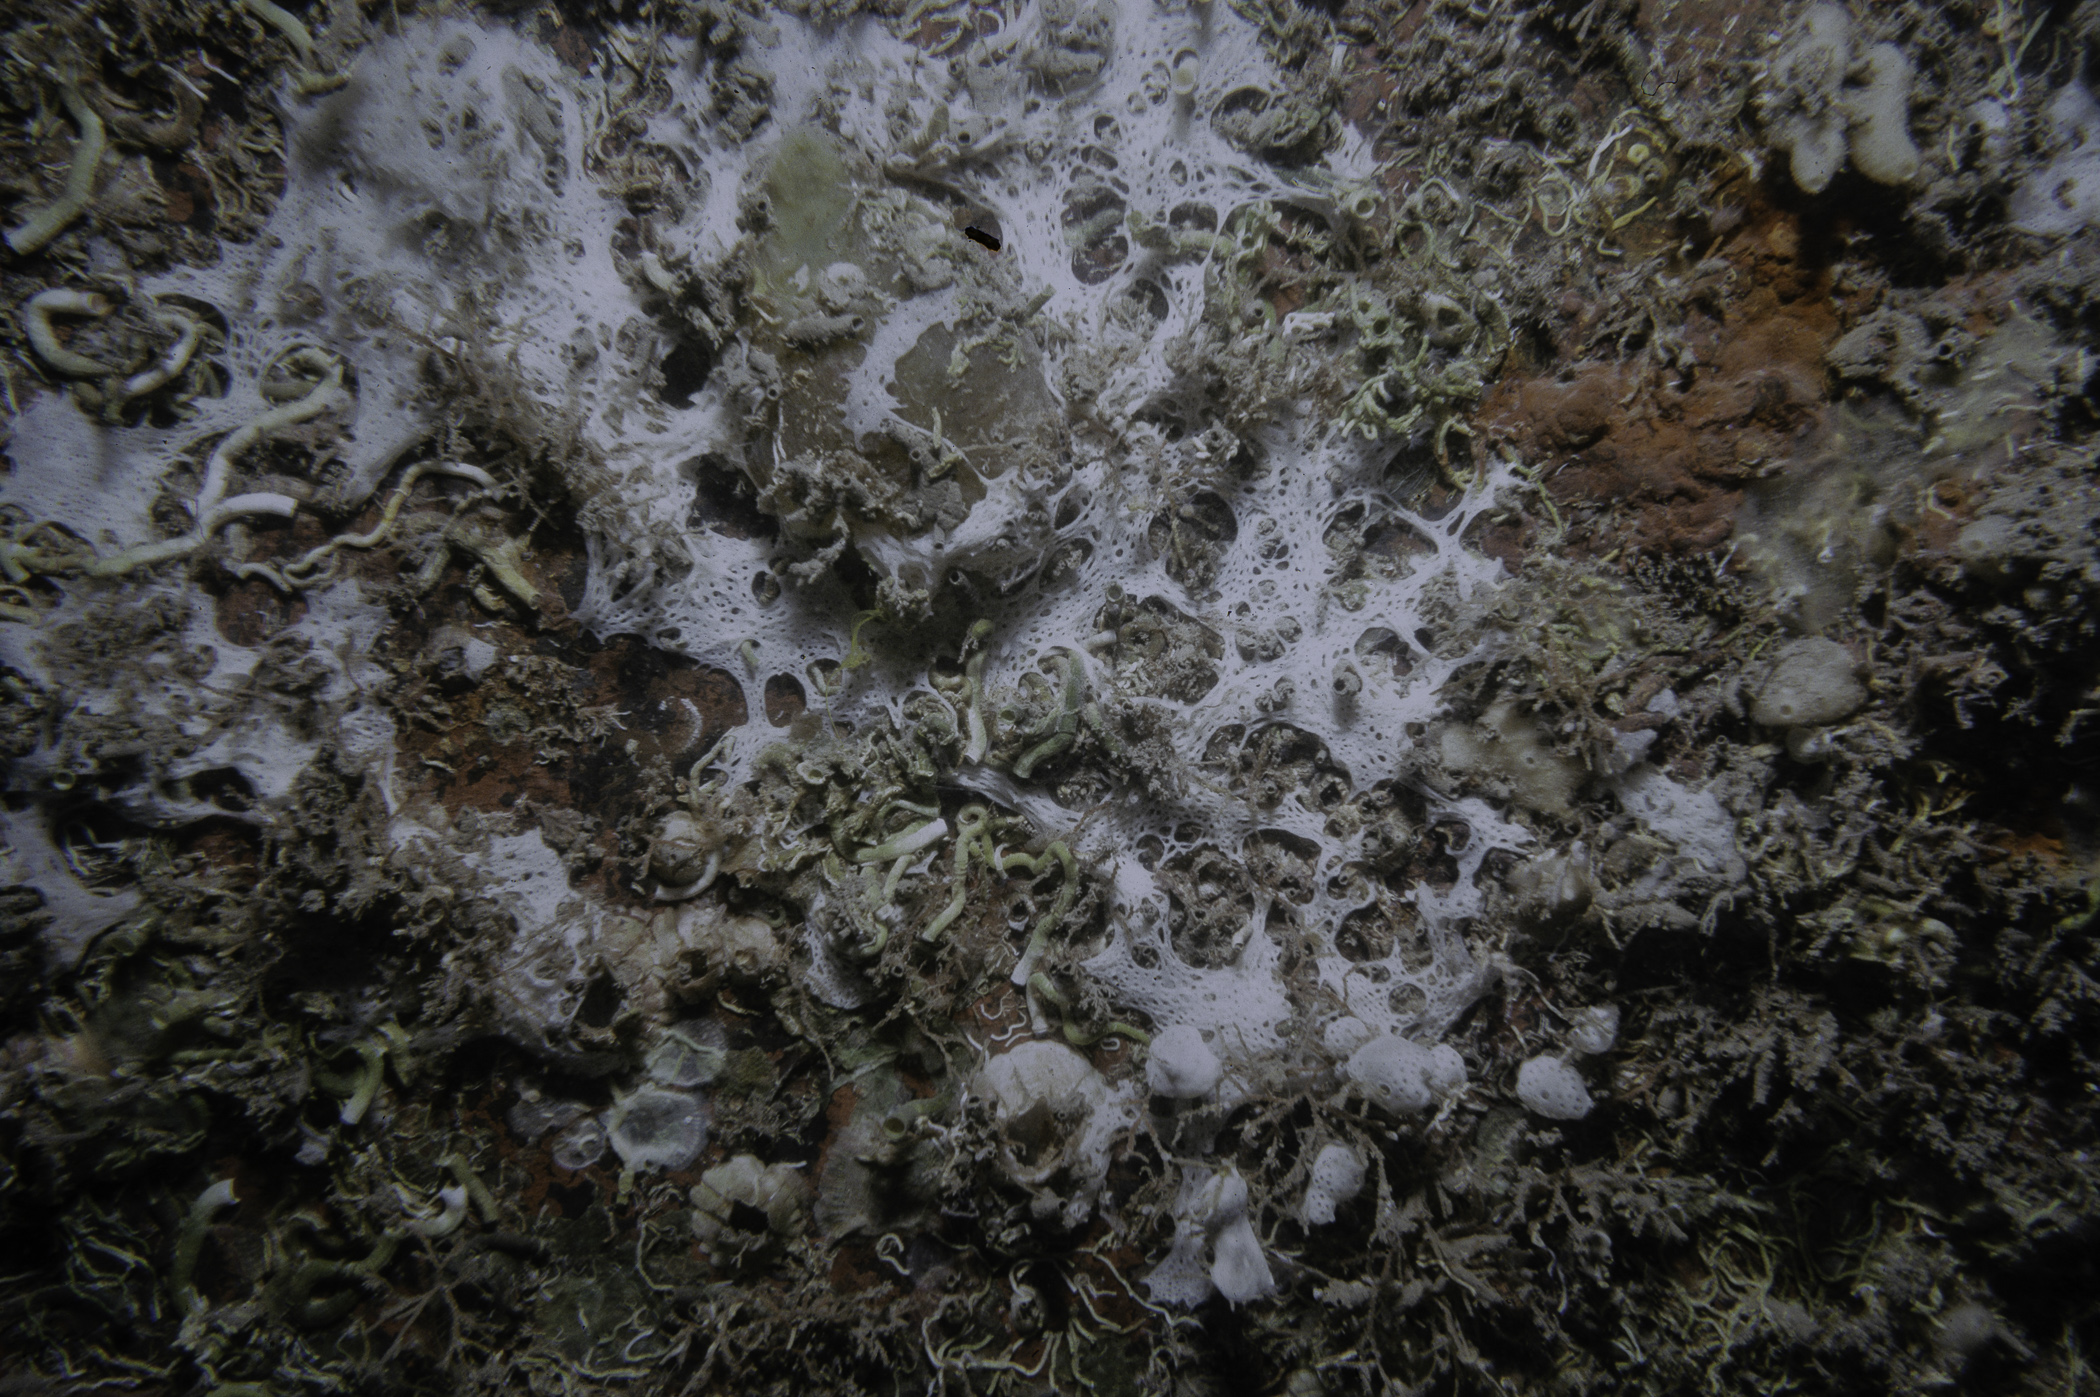 Clathrina coriacea. Site: Lee's Wreck, Ballyhenry Bay, Strangford Lough. 